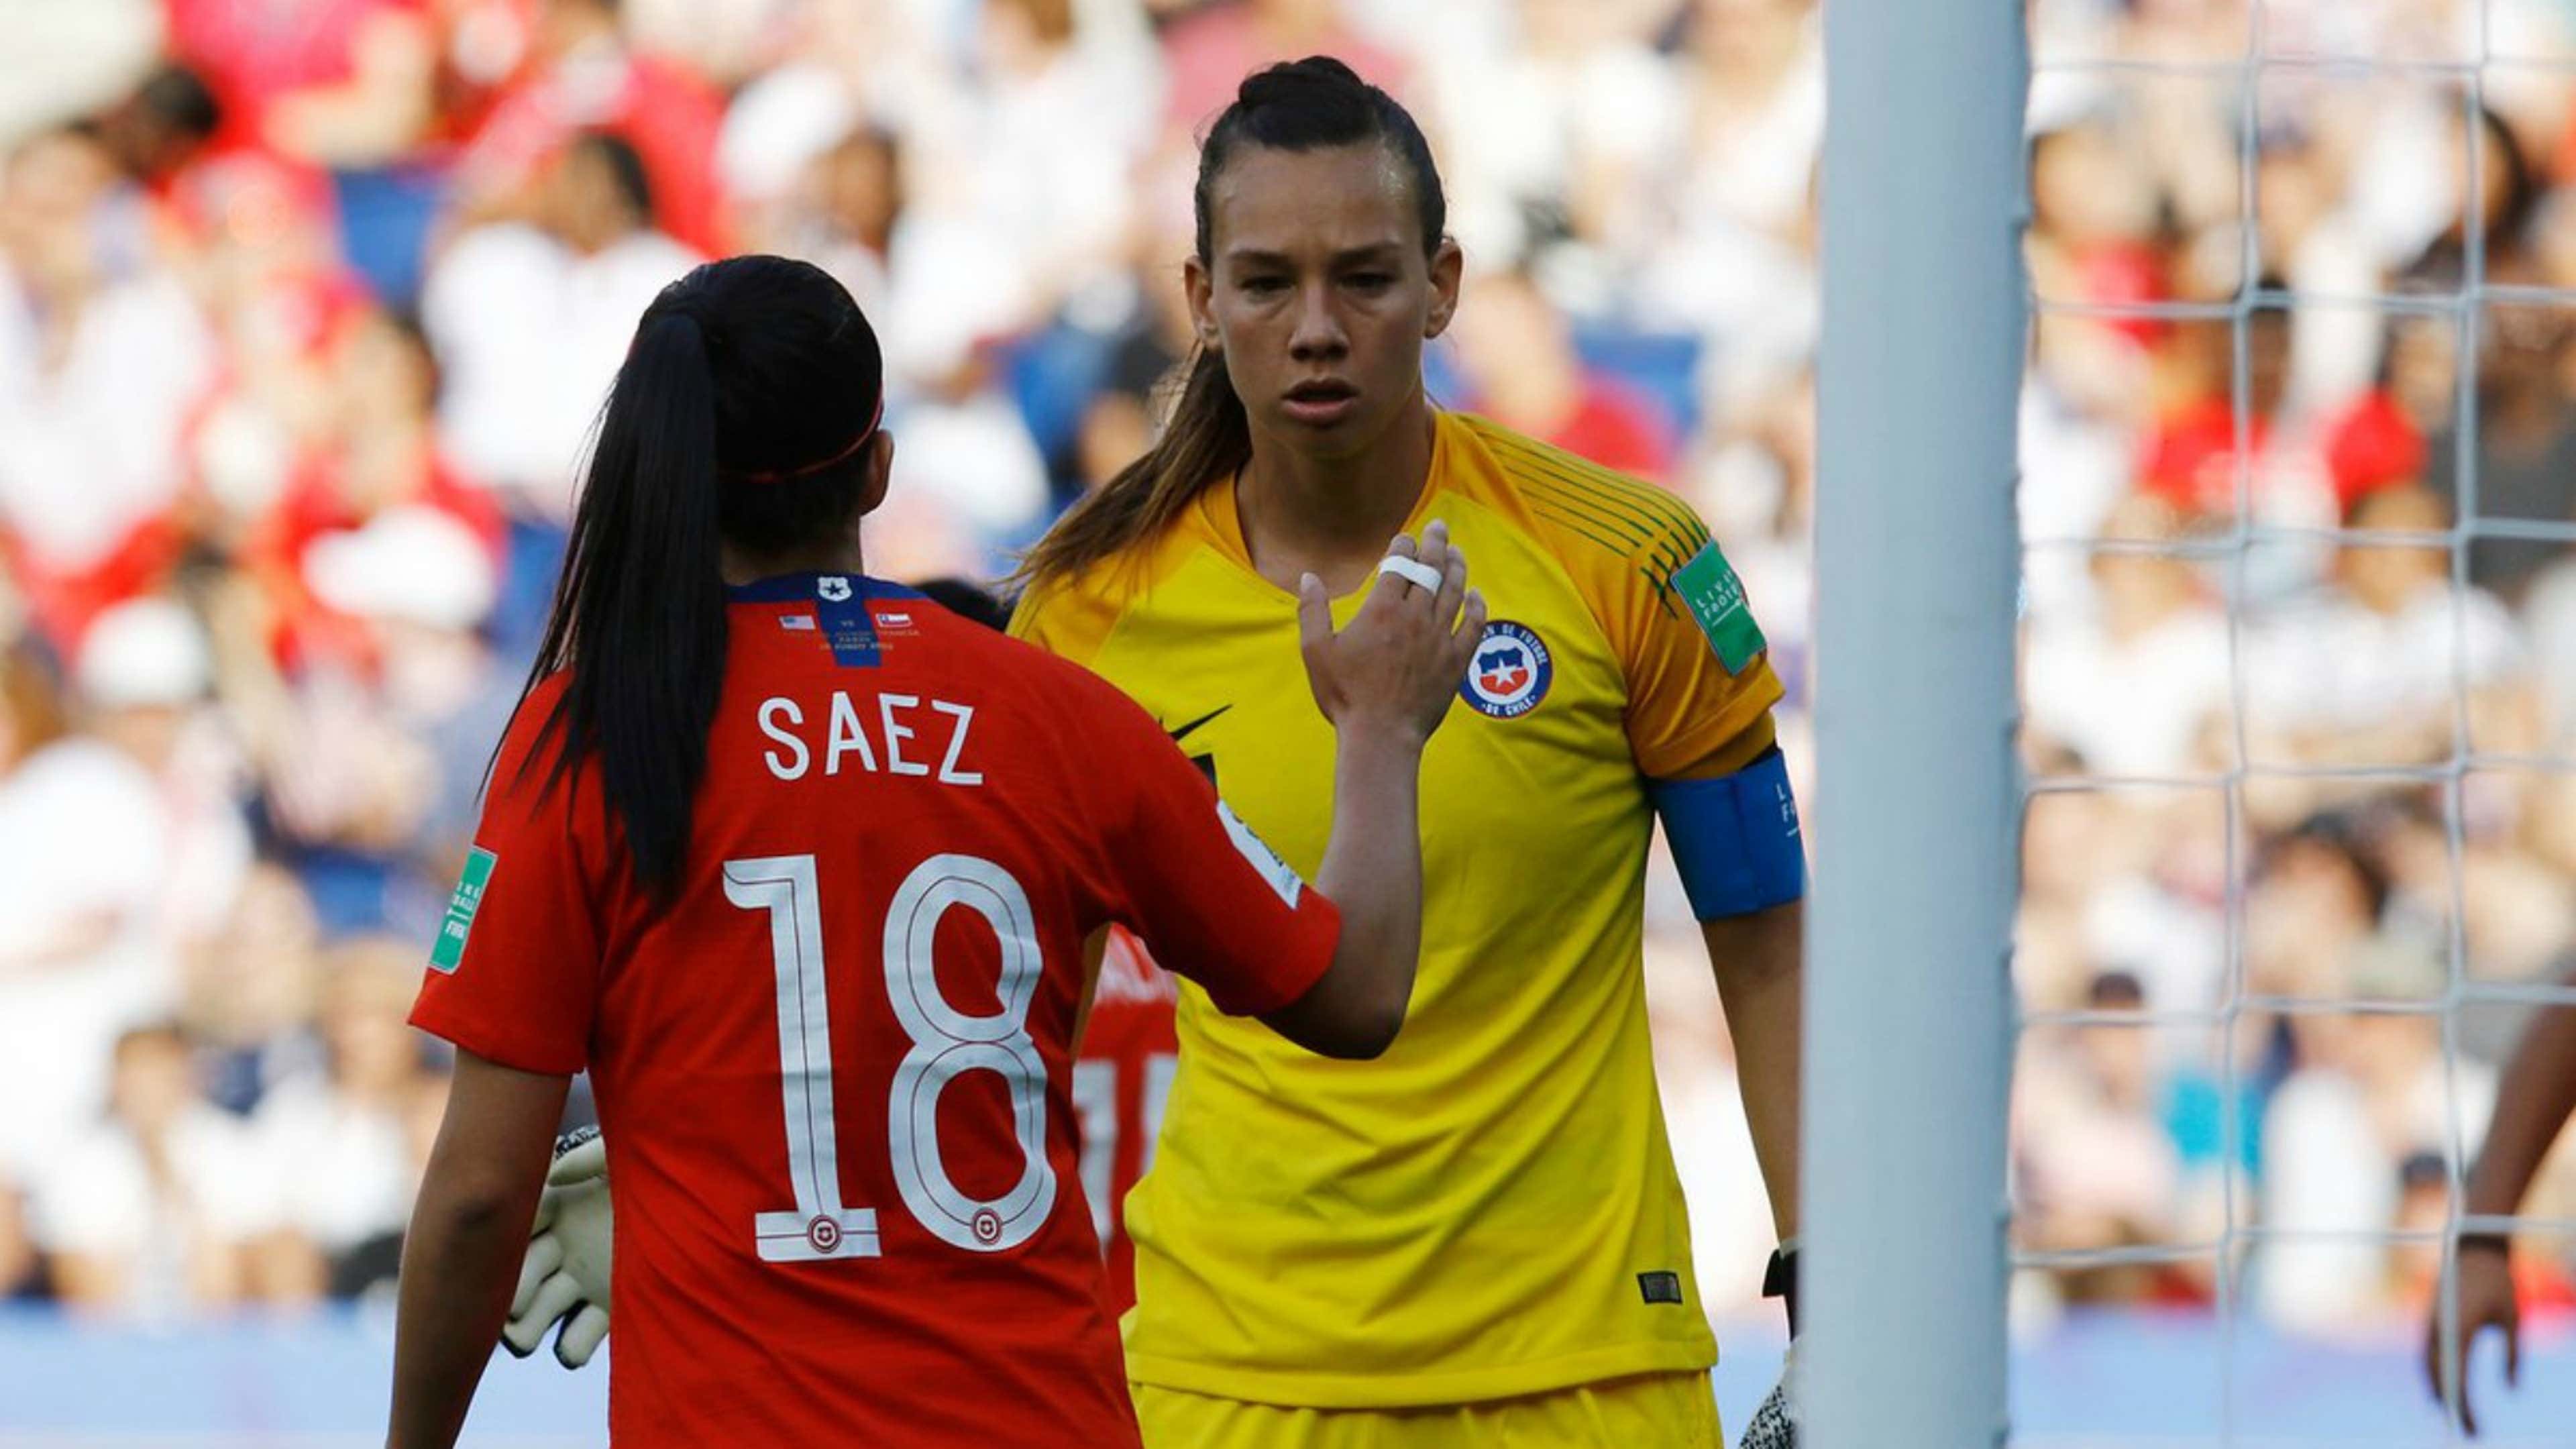 Las mujeres y su importancia en el deporte chileno